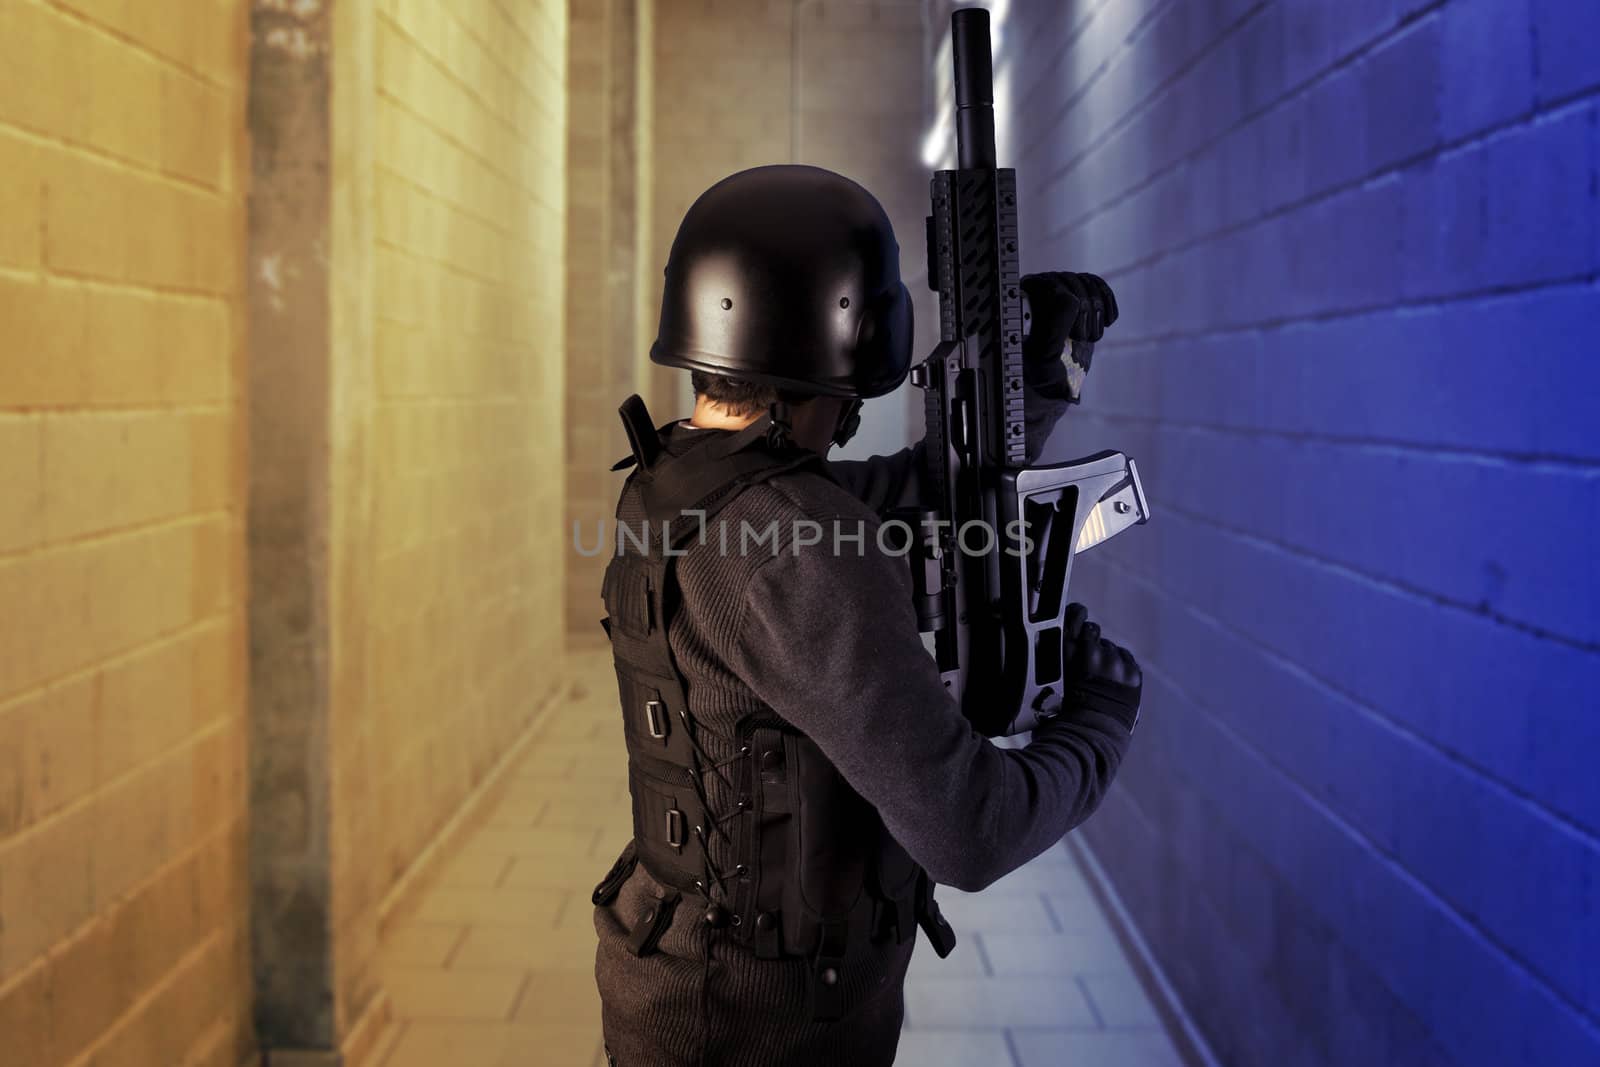 Airport security, armed police wearing bulletproof vests by FernandoCortes